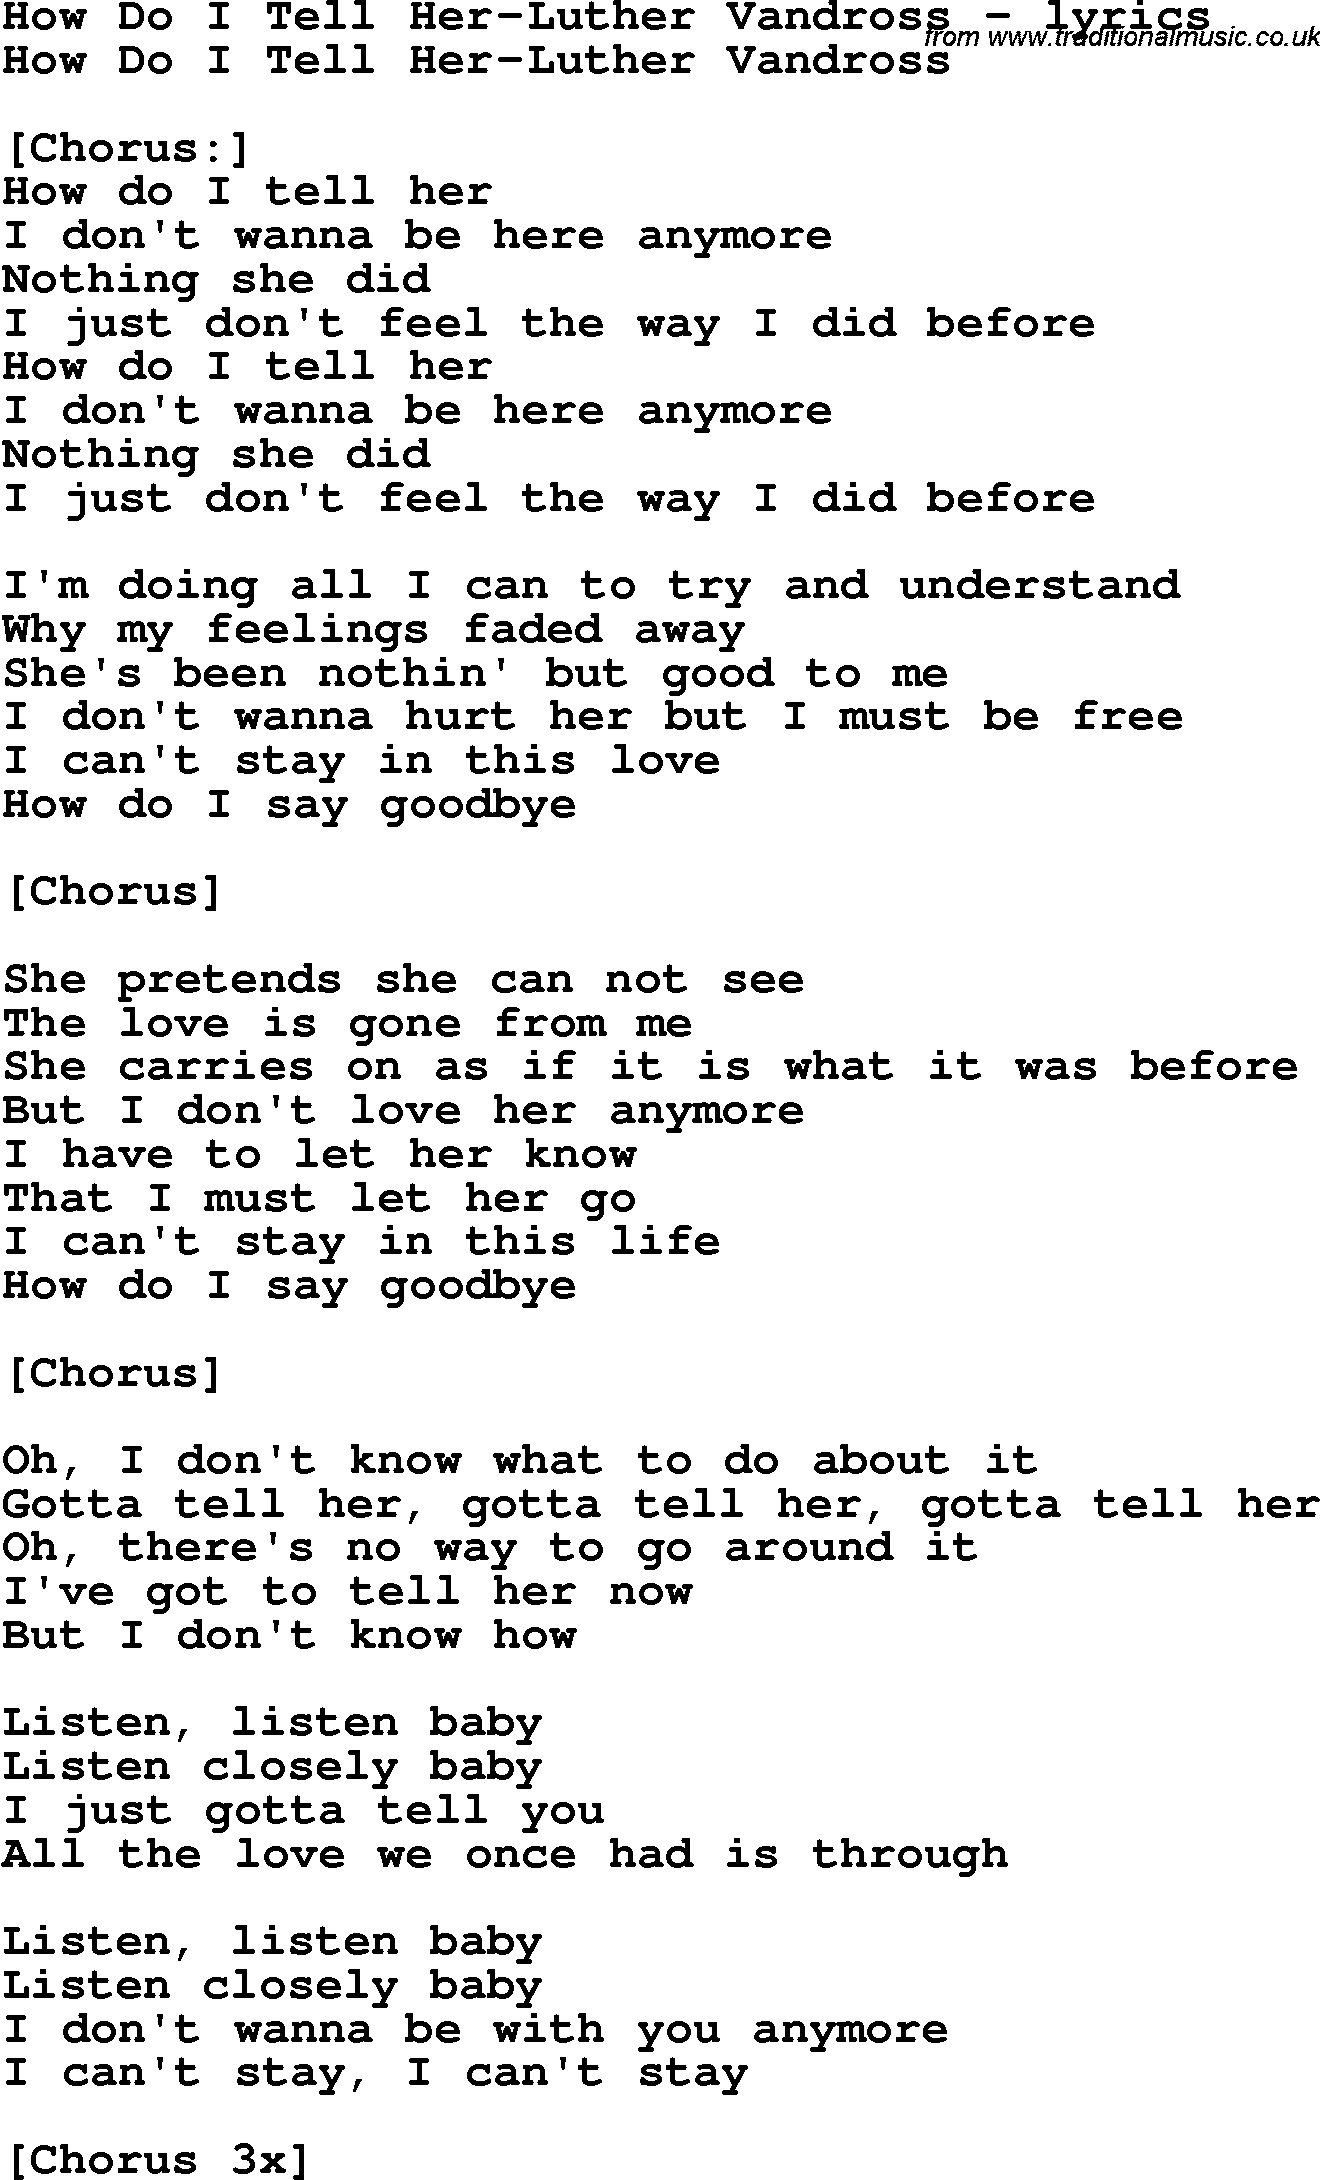 Luther Vandross Love Songs Lyrics Love Song Lyrics For How do i